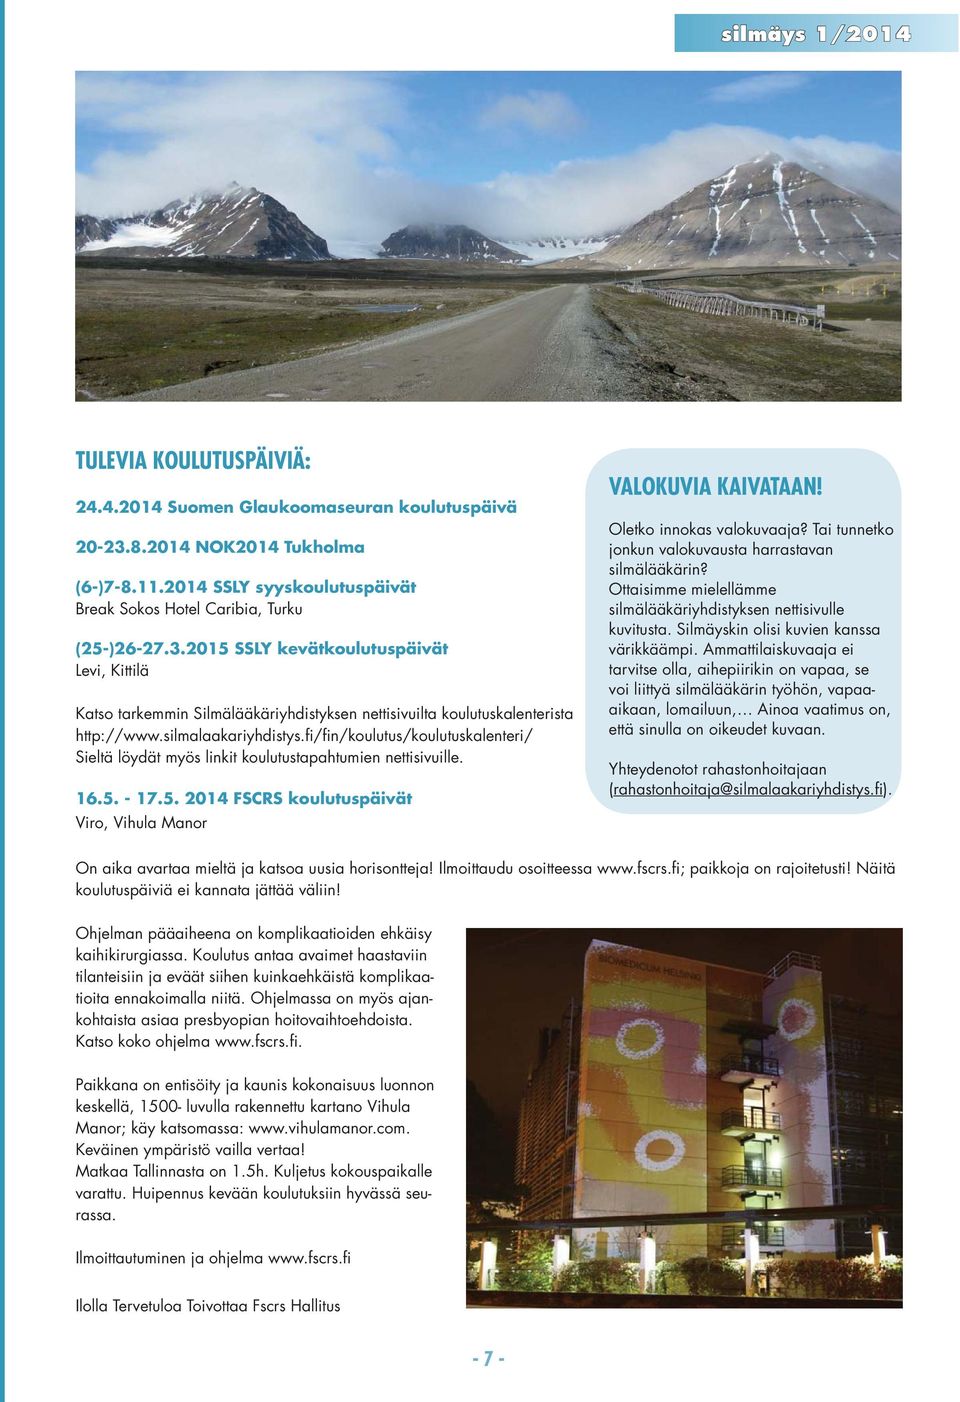 2015 SSLY kevätkoulutuspäivät Levi, Kittilä Katso tarkemmin Silmälääkäriyhdistyksen nettisivuilta koulutuskalenterista http://www.silmalaakariyhdistys.